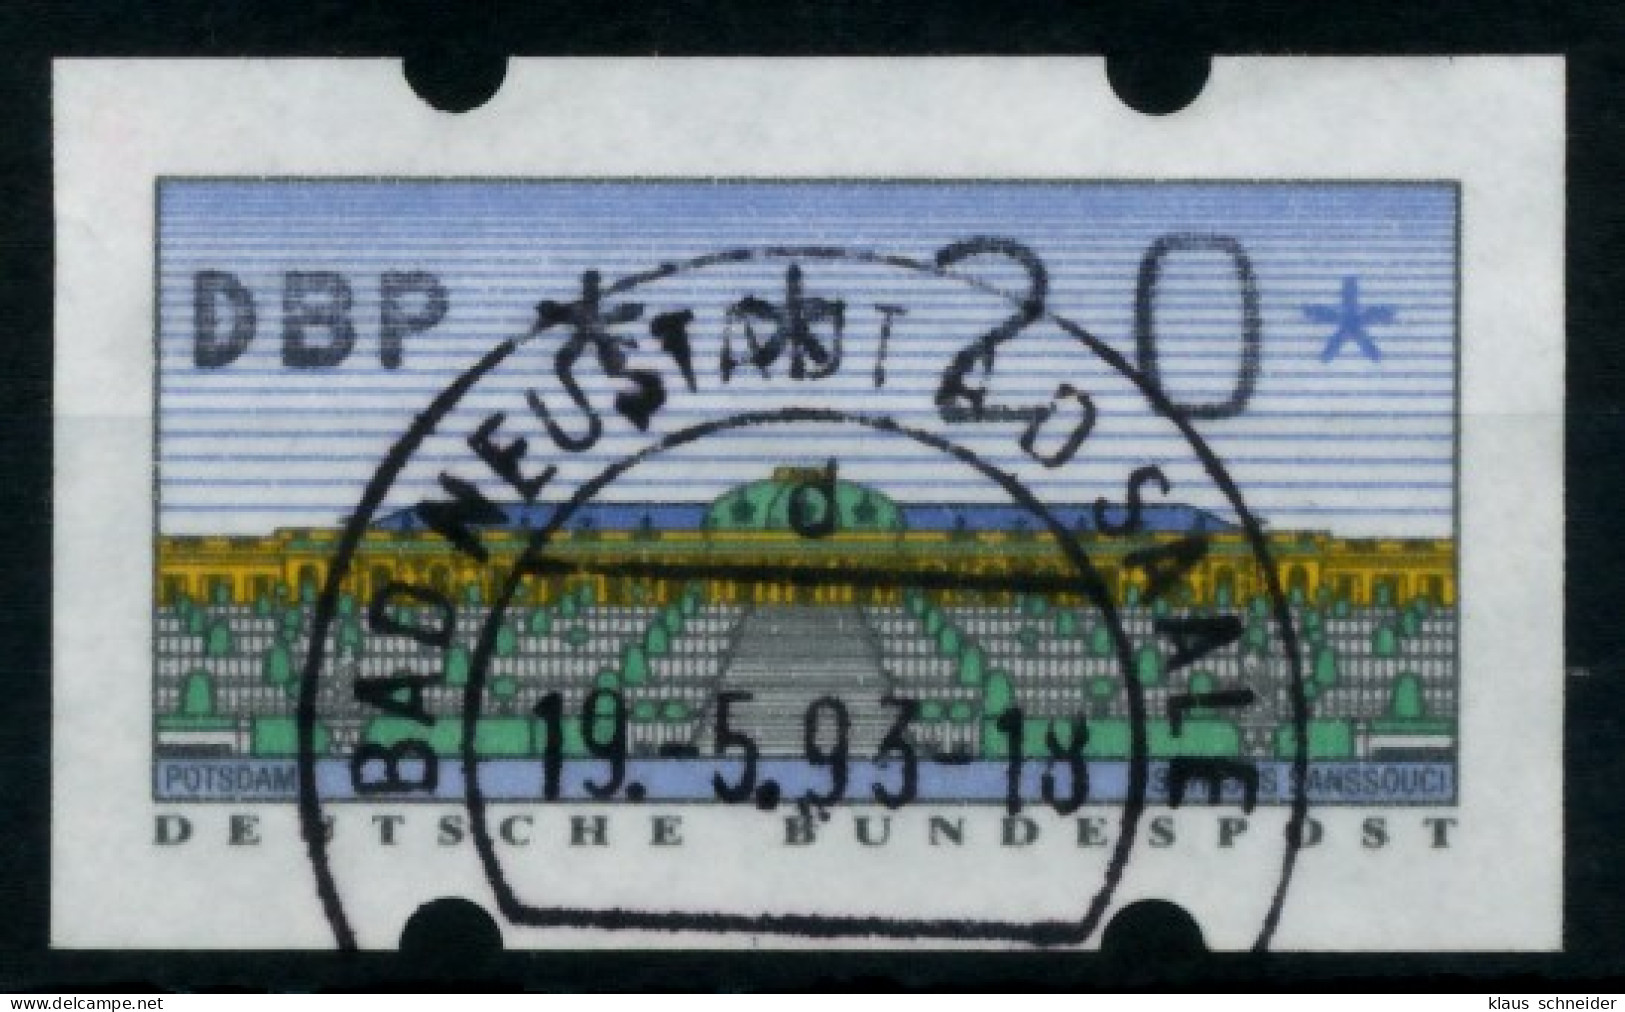 BRD ATM 1993 Nr 2-1.2-0020 Gestempelt X75C39A - Machine Labels [ATM]